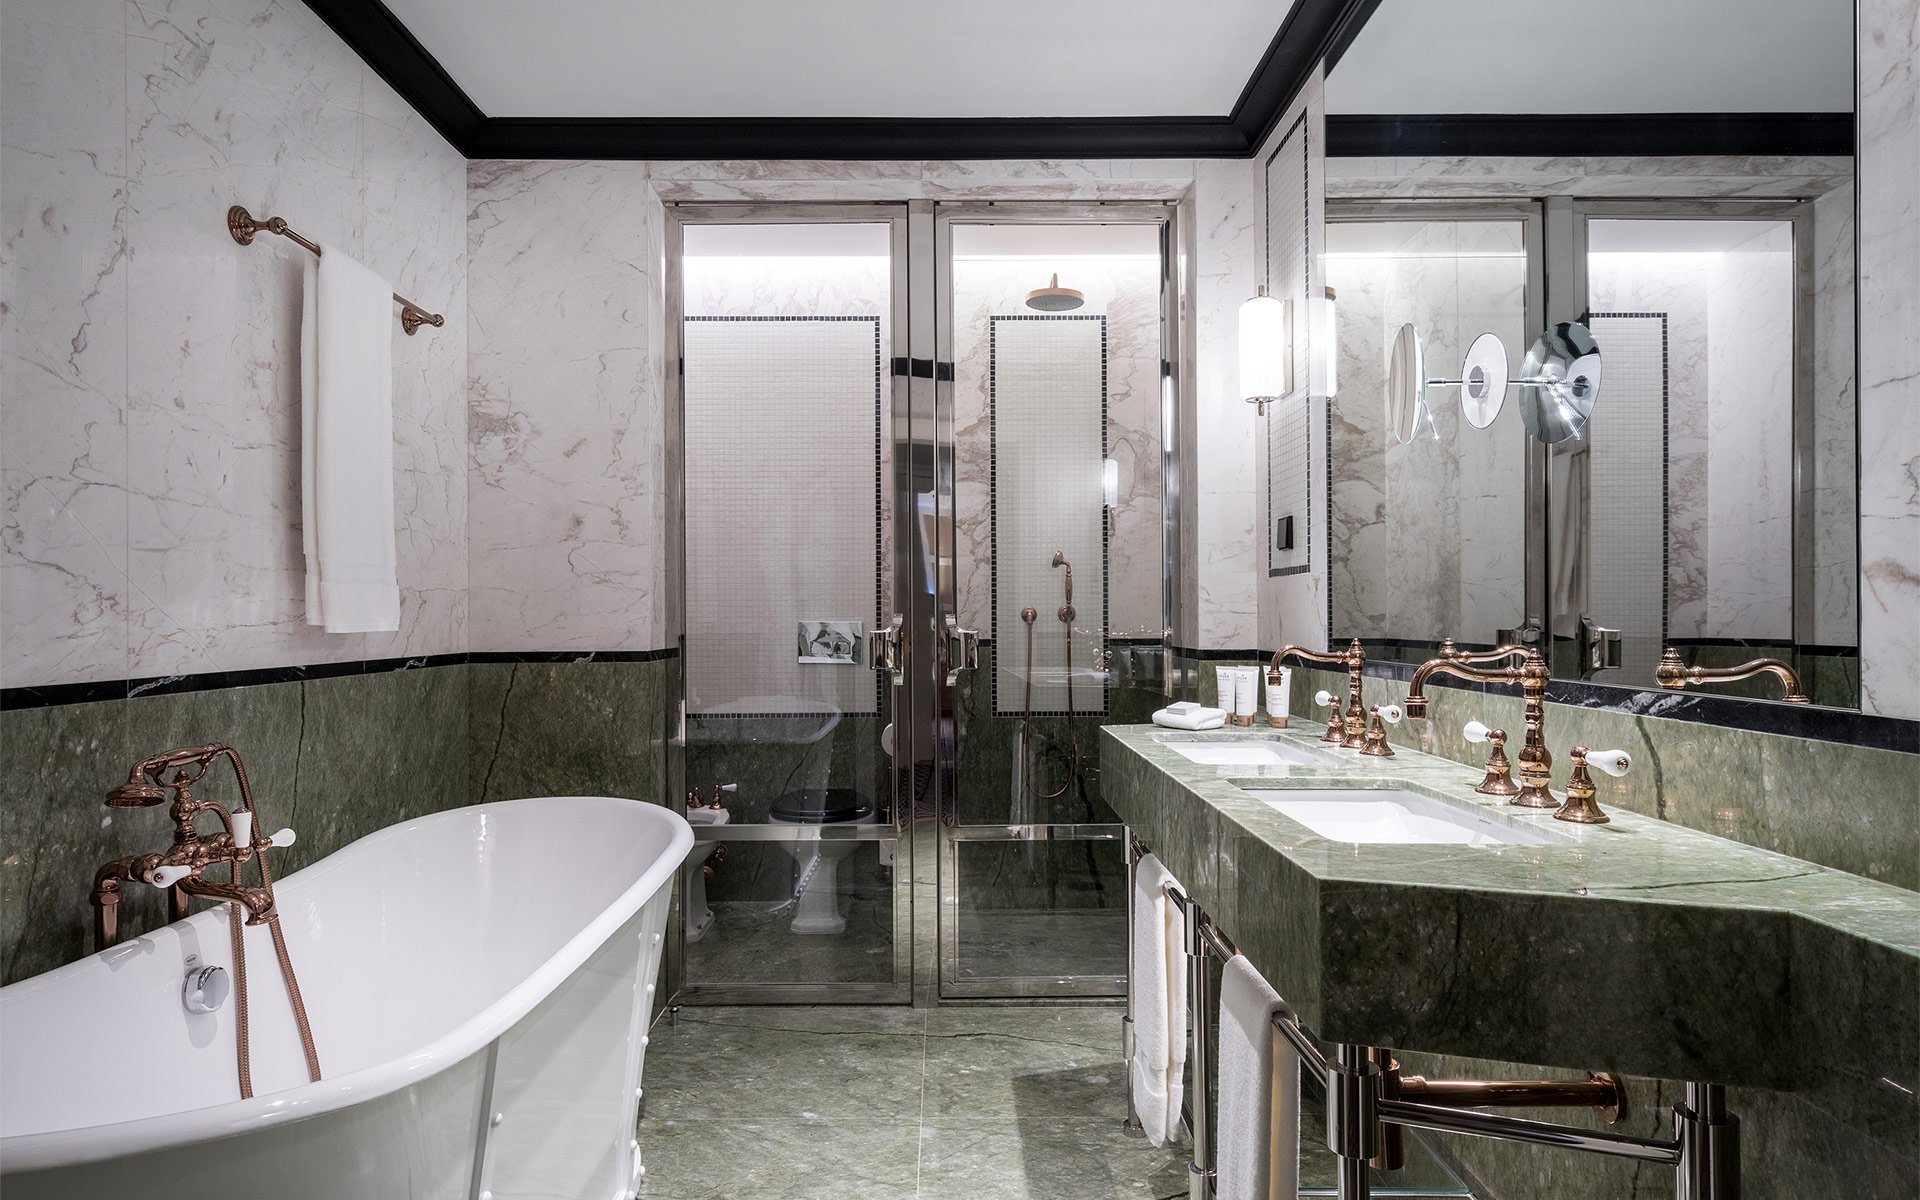 Maison Albar Hotels Le Monumental Palace bathroom suite